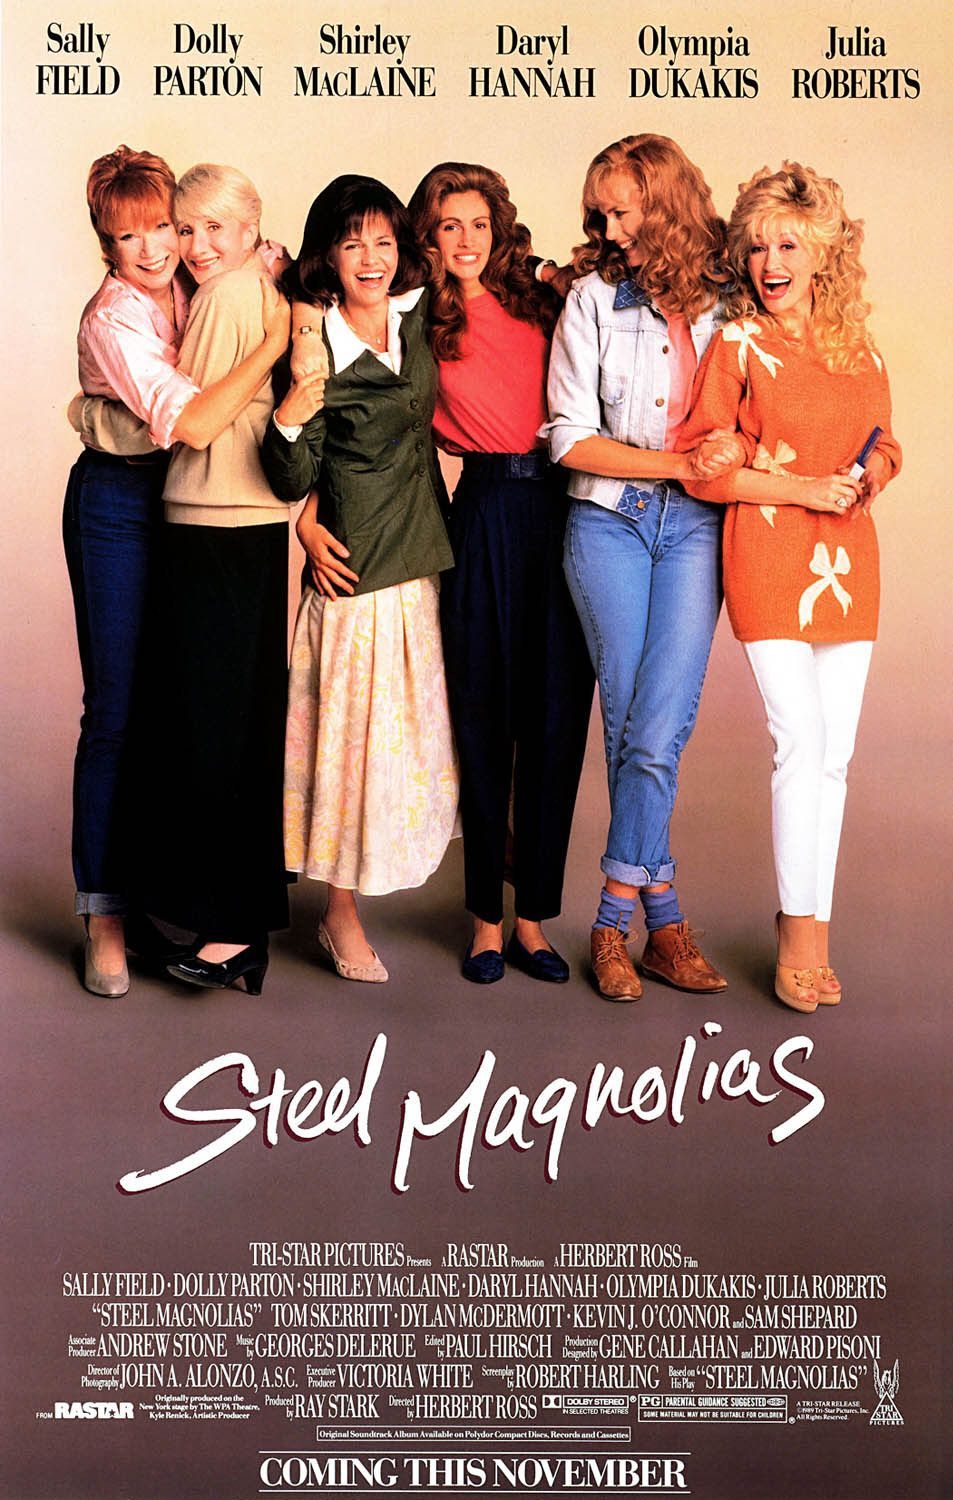 STEEL MAGNOLIAS (1989) at Paramount 50th Summer Classic Film Series